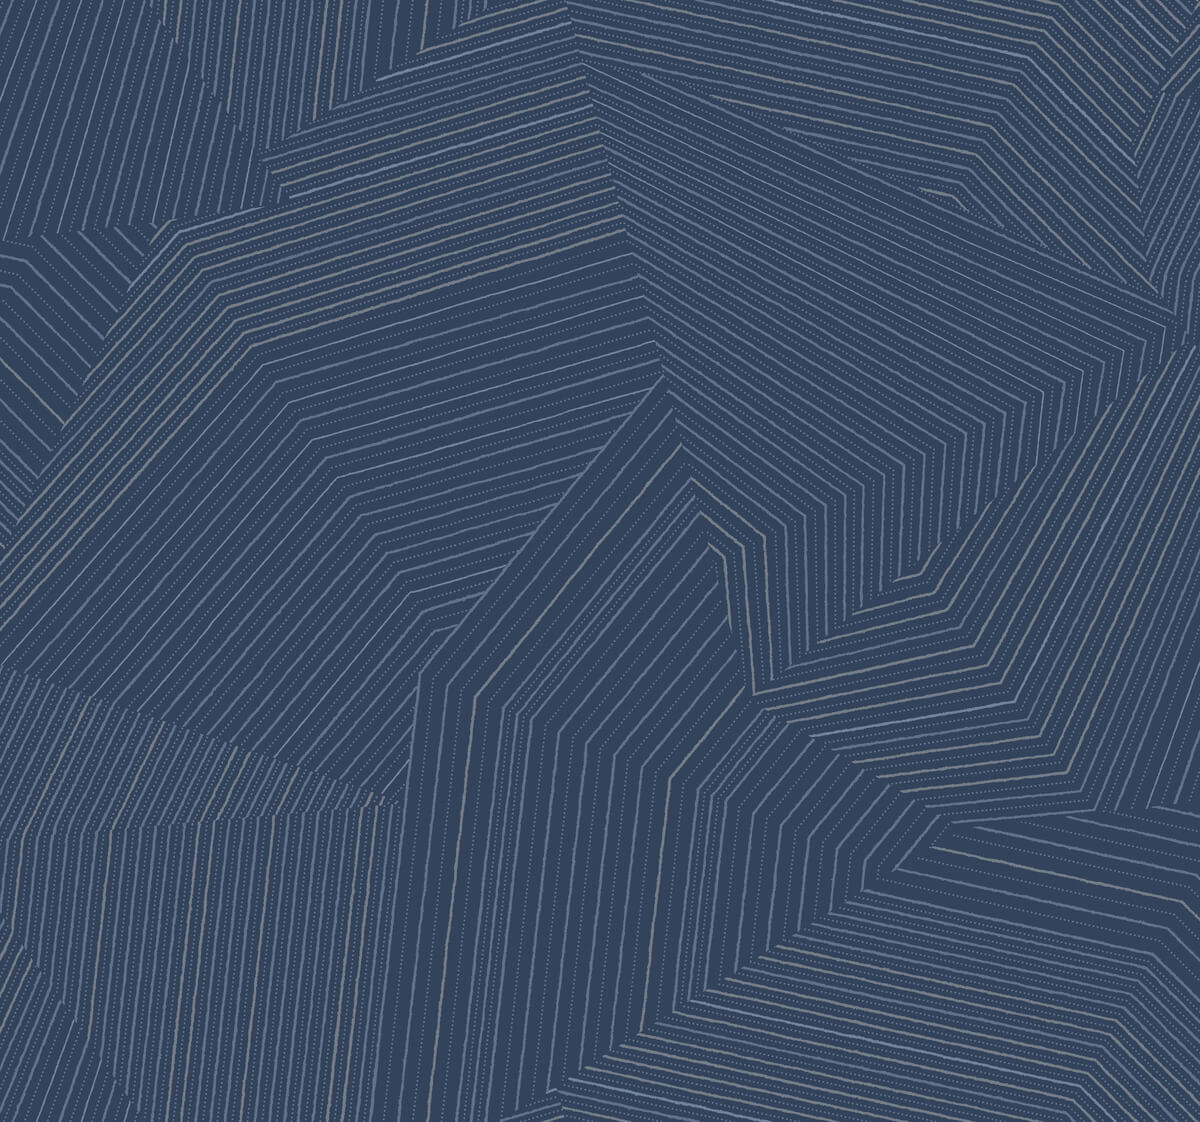 New Origins Dotted Maze Wallpaper - Navy